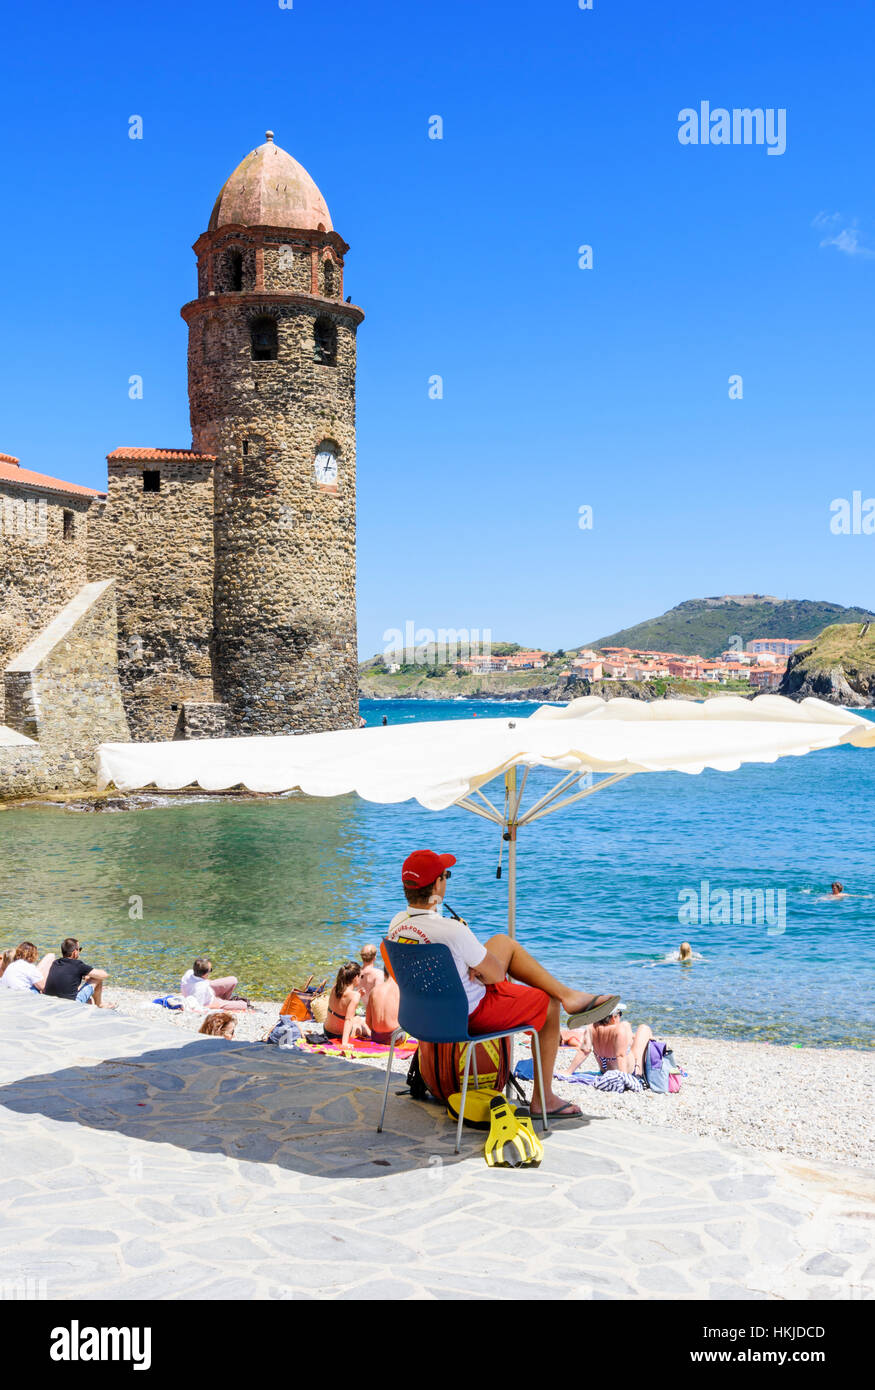 Bagnino di spiaggia ombreggiata da un ombrellone sulla Plage Boramar vicino alla torre di Notre Dame des Anges, Collioure, Côte Vermeille, Francia Foto Stock